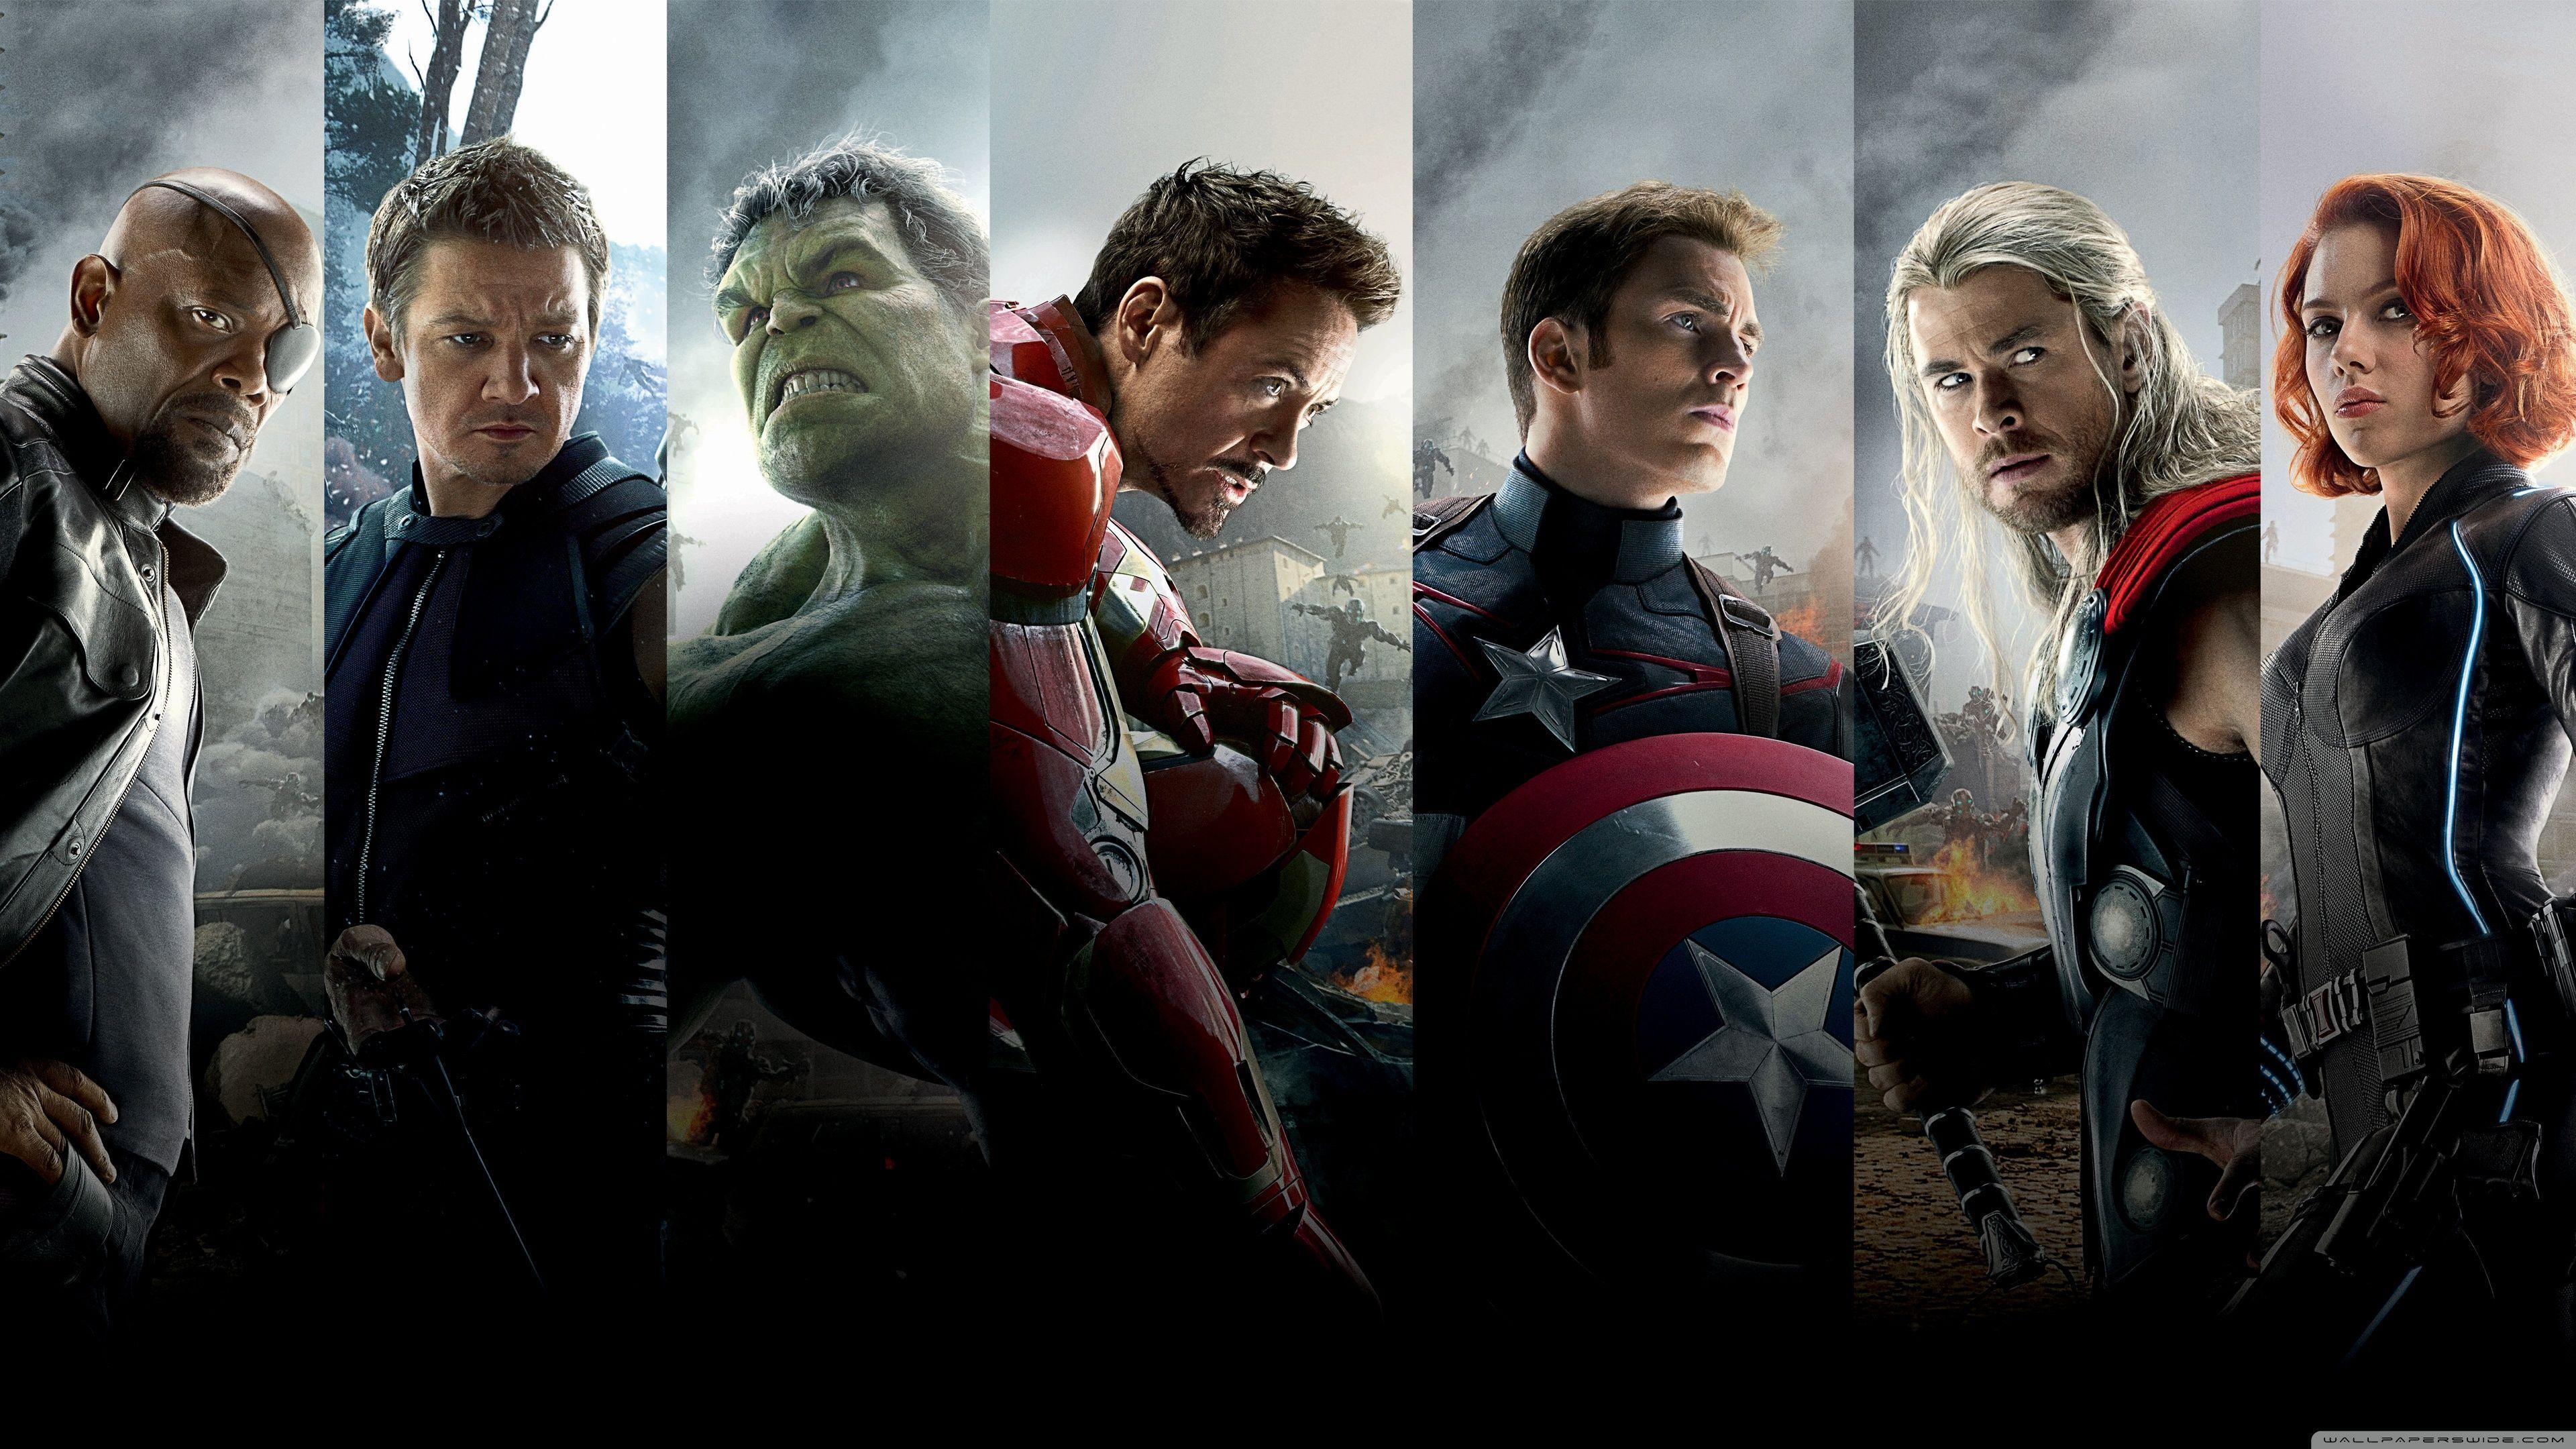 WallpaperWide.com ❤ The Avengers HD Desktop Wallpaper for 4K